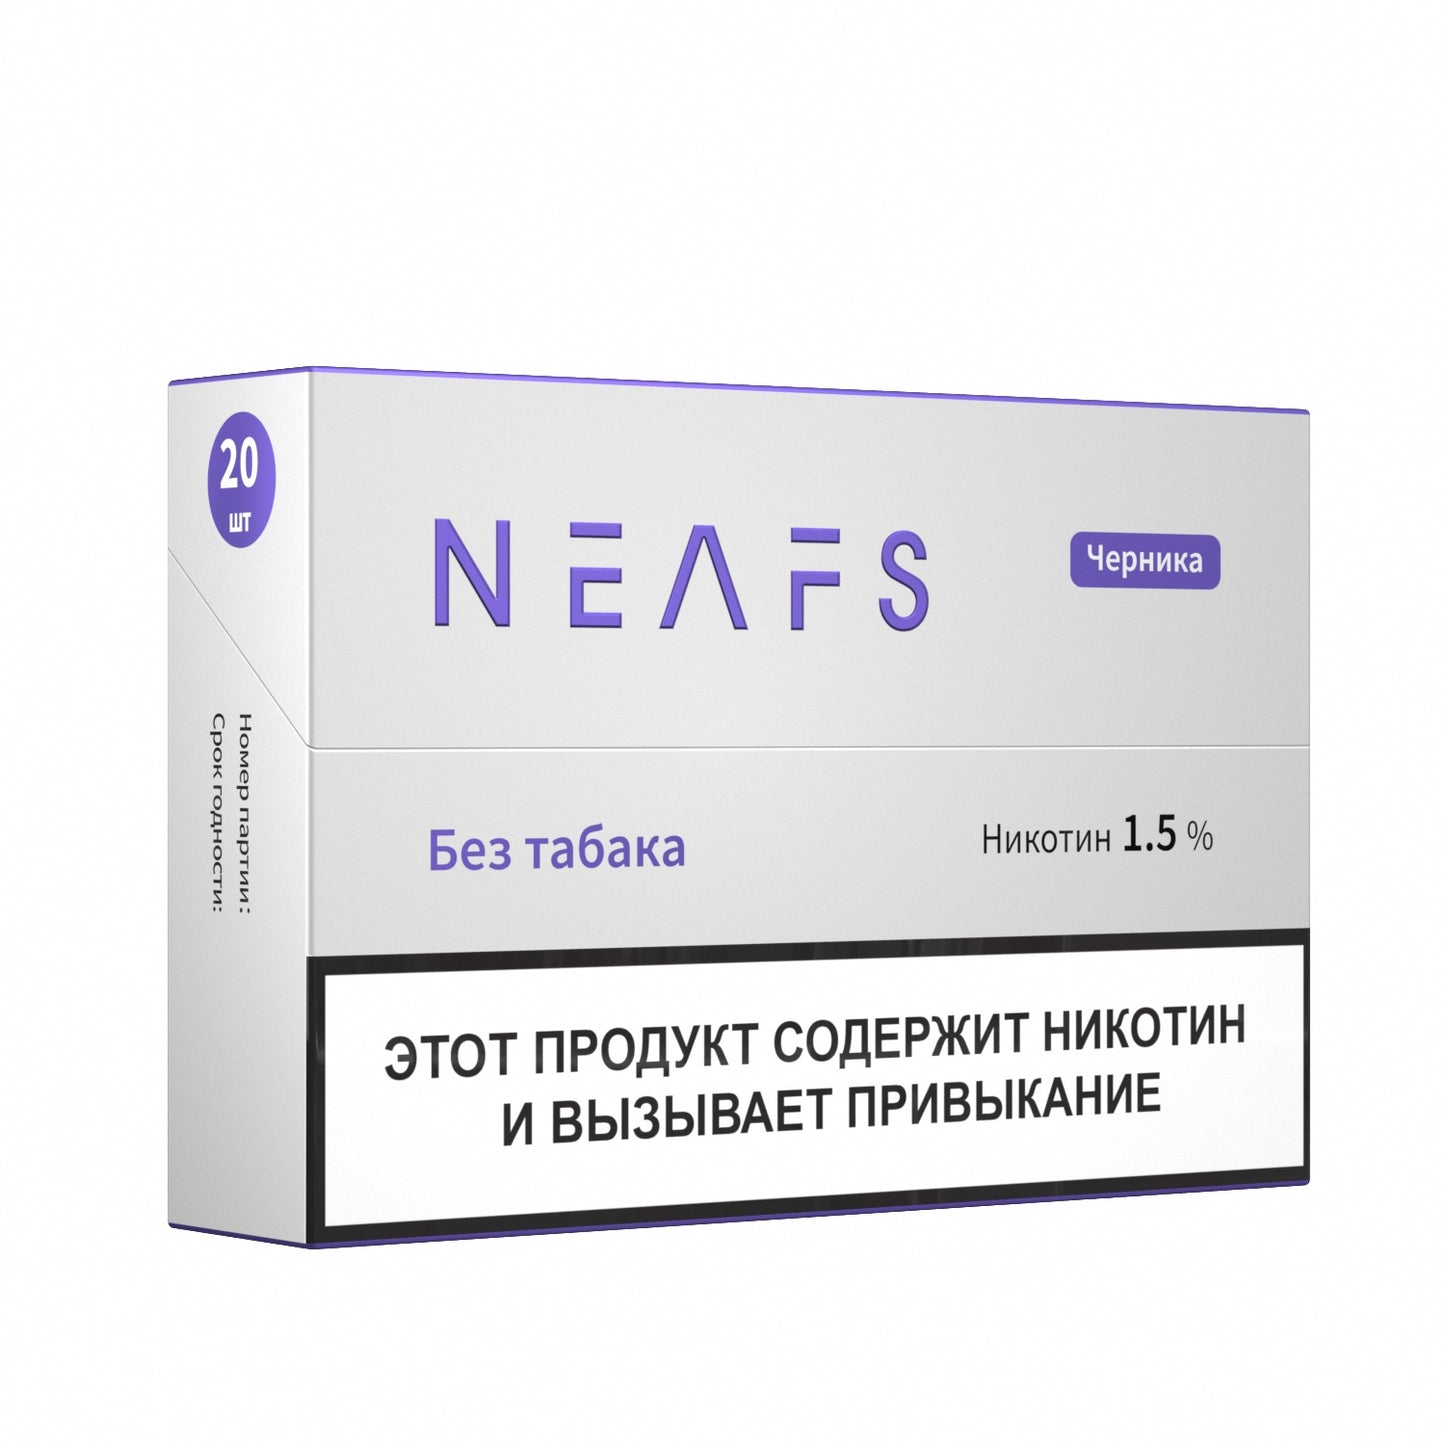 Никотиновые стики NEAFS Черника 1.5% – 200 стиков